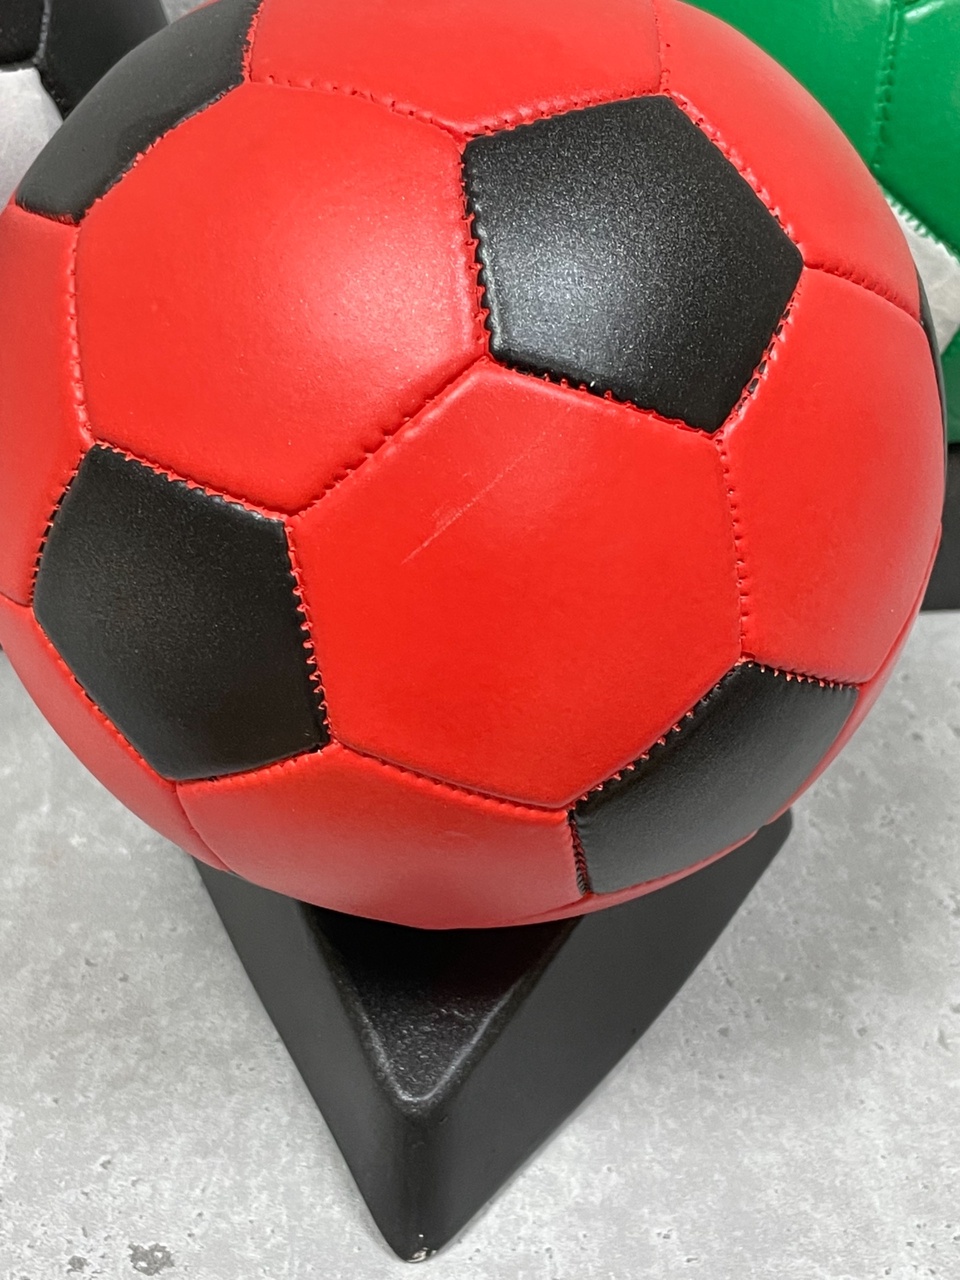 Копилка - Футбольный мяч - 400 ₽, заказать онлайн.